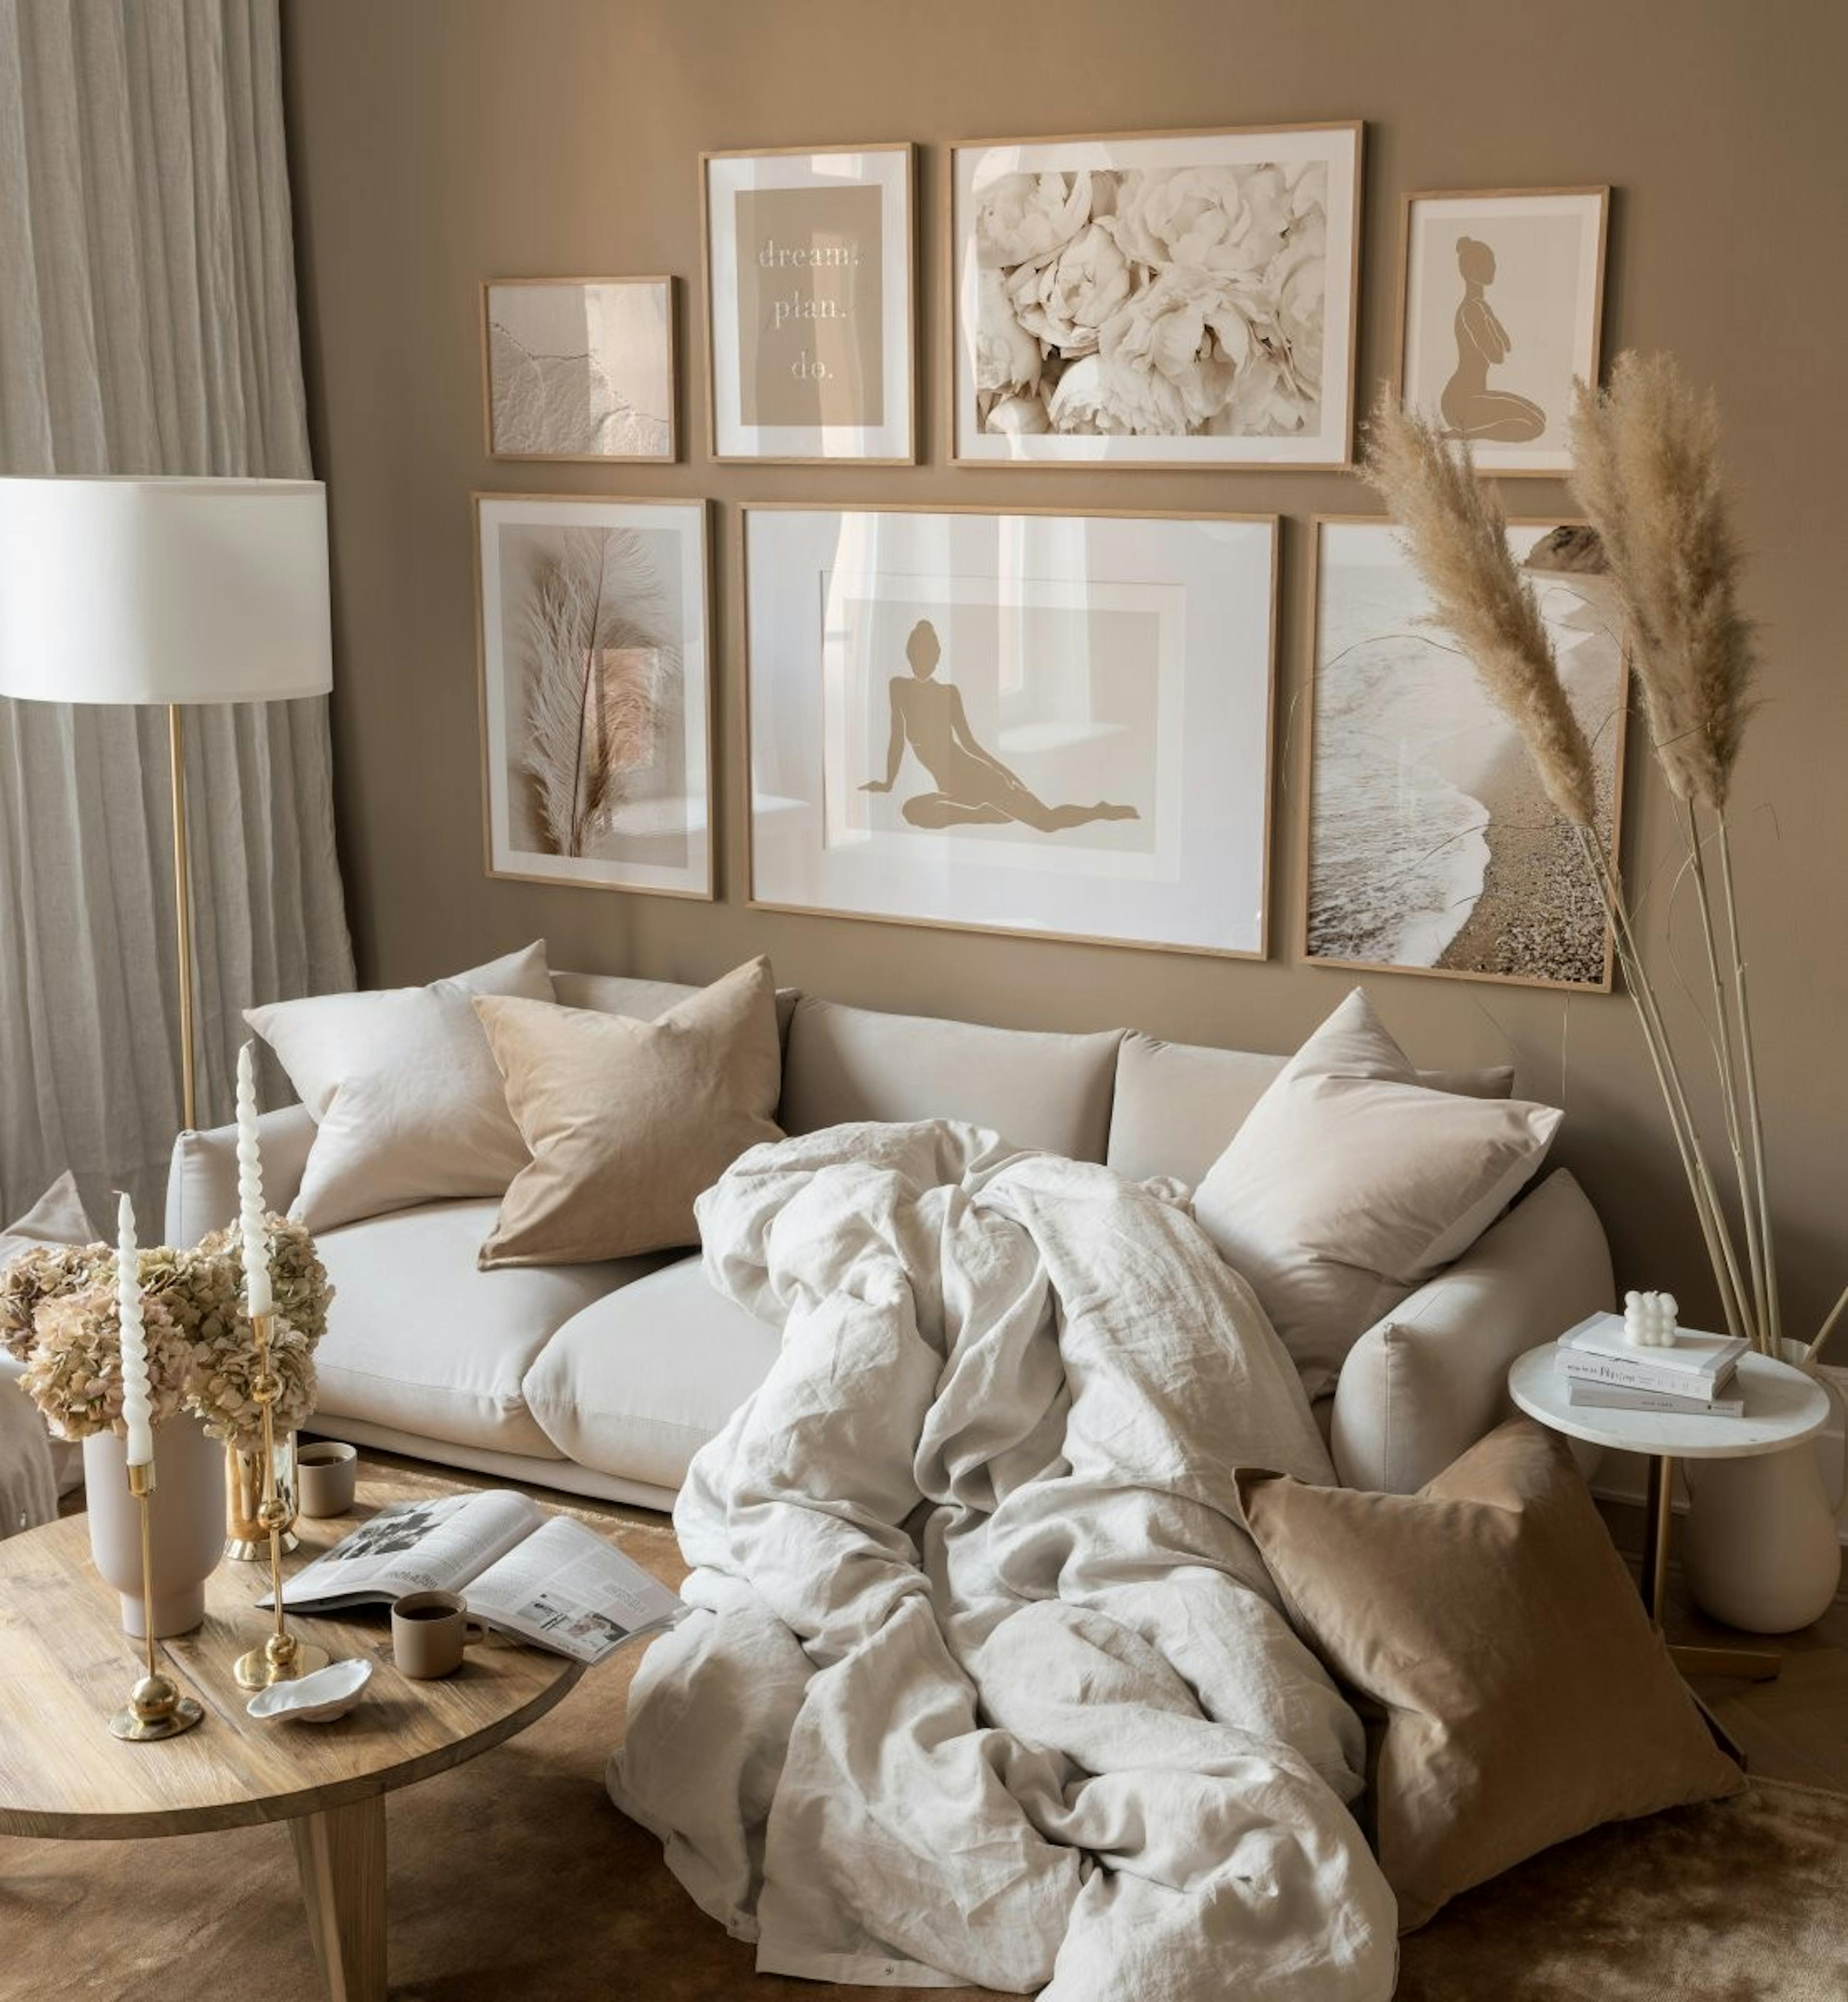 Illustrazioni e fotografie rilassanti in beige per il soggiorno.